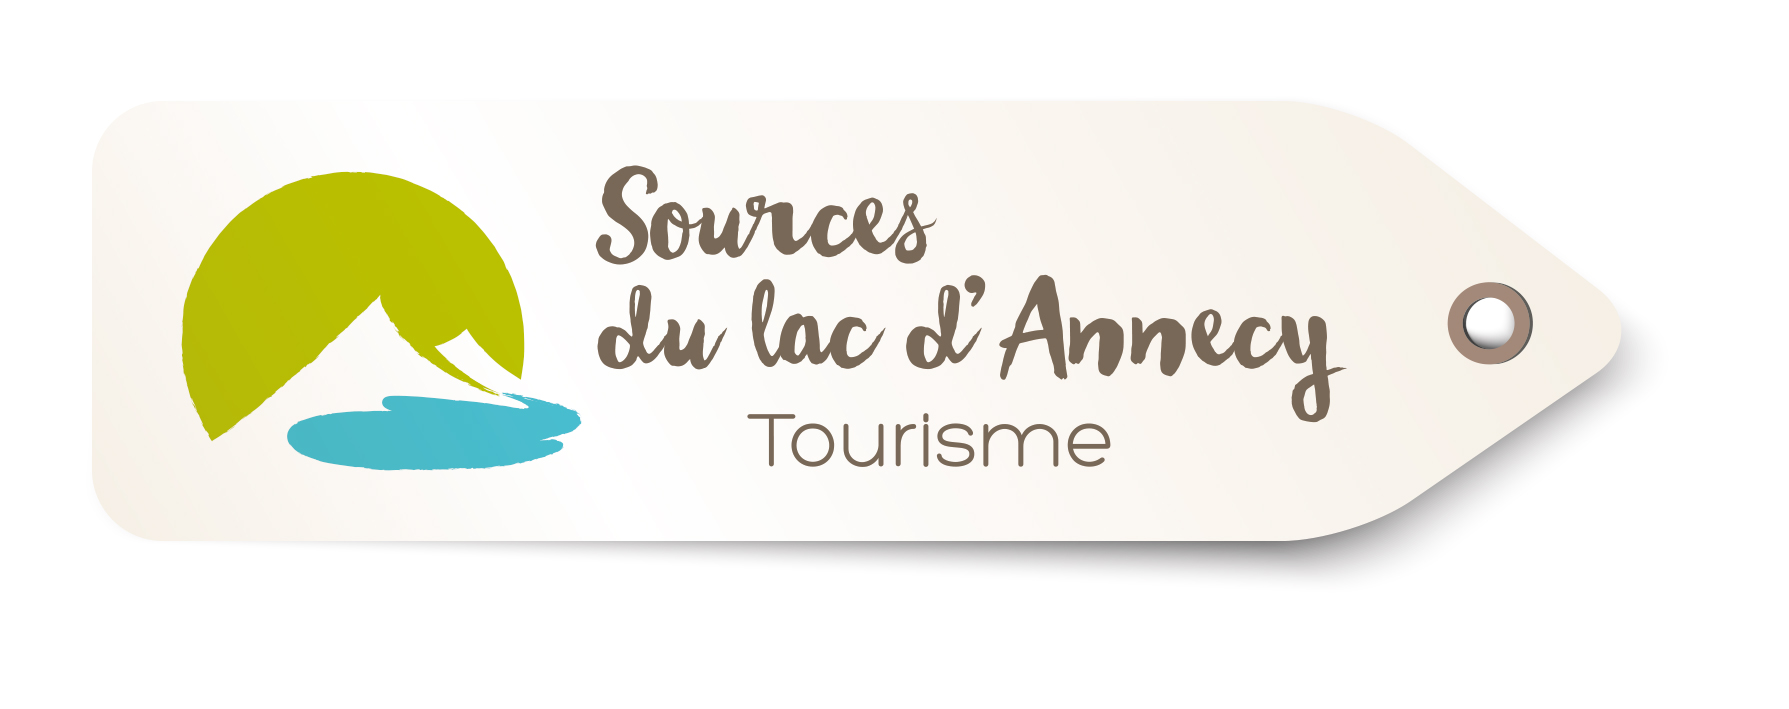 Sources du Lac d'Annecy visitor center